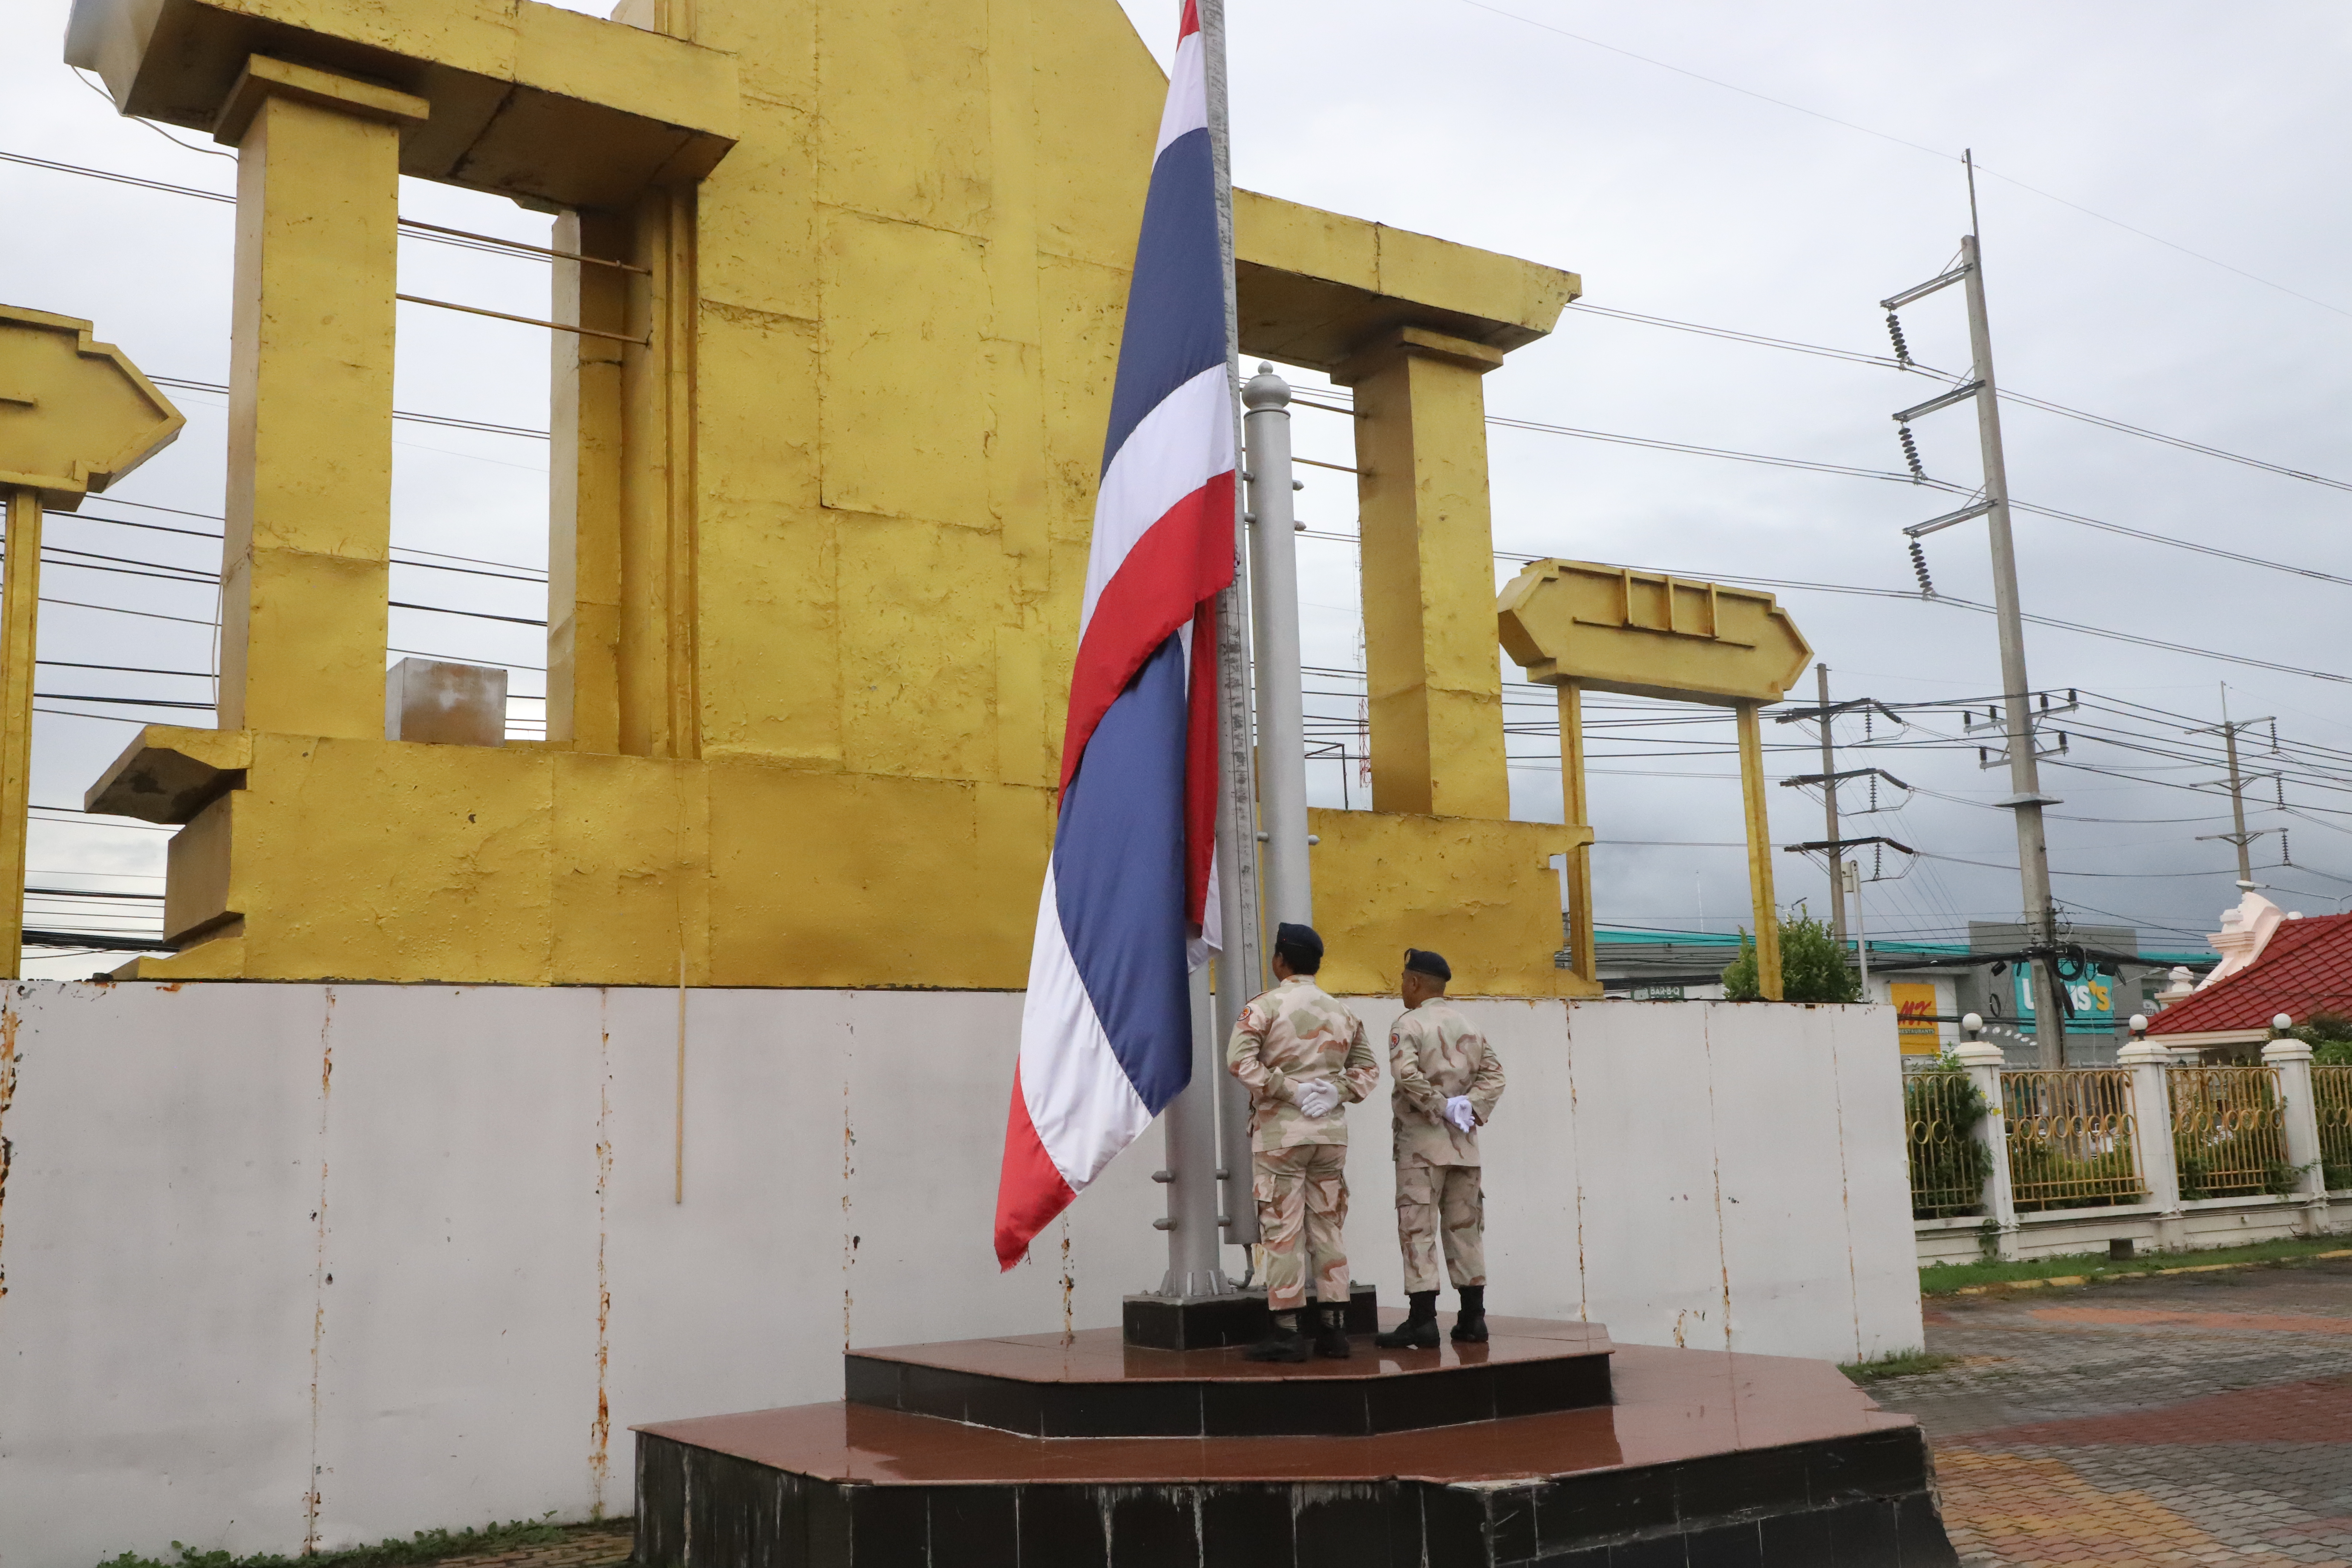 จังหวัดปทุมธานี ร่วมน้อมรำลึกถึงพระบาทสมเด็จพระมงกุฎเกล้าเจ้าอยู่หัว จัดพิธีเคารพธงชาติและร้องเพลงชาติไทย เนื่องในวันพระราชทานธงชาติไทย 28 กันยายน 